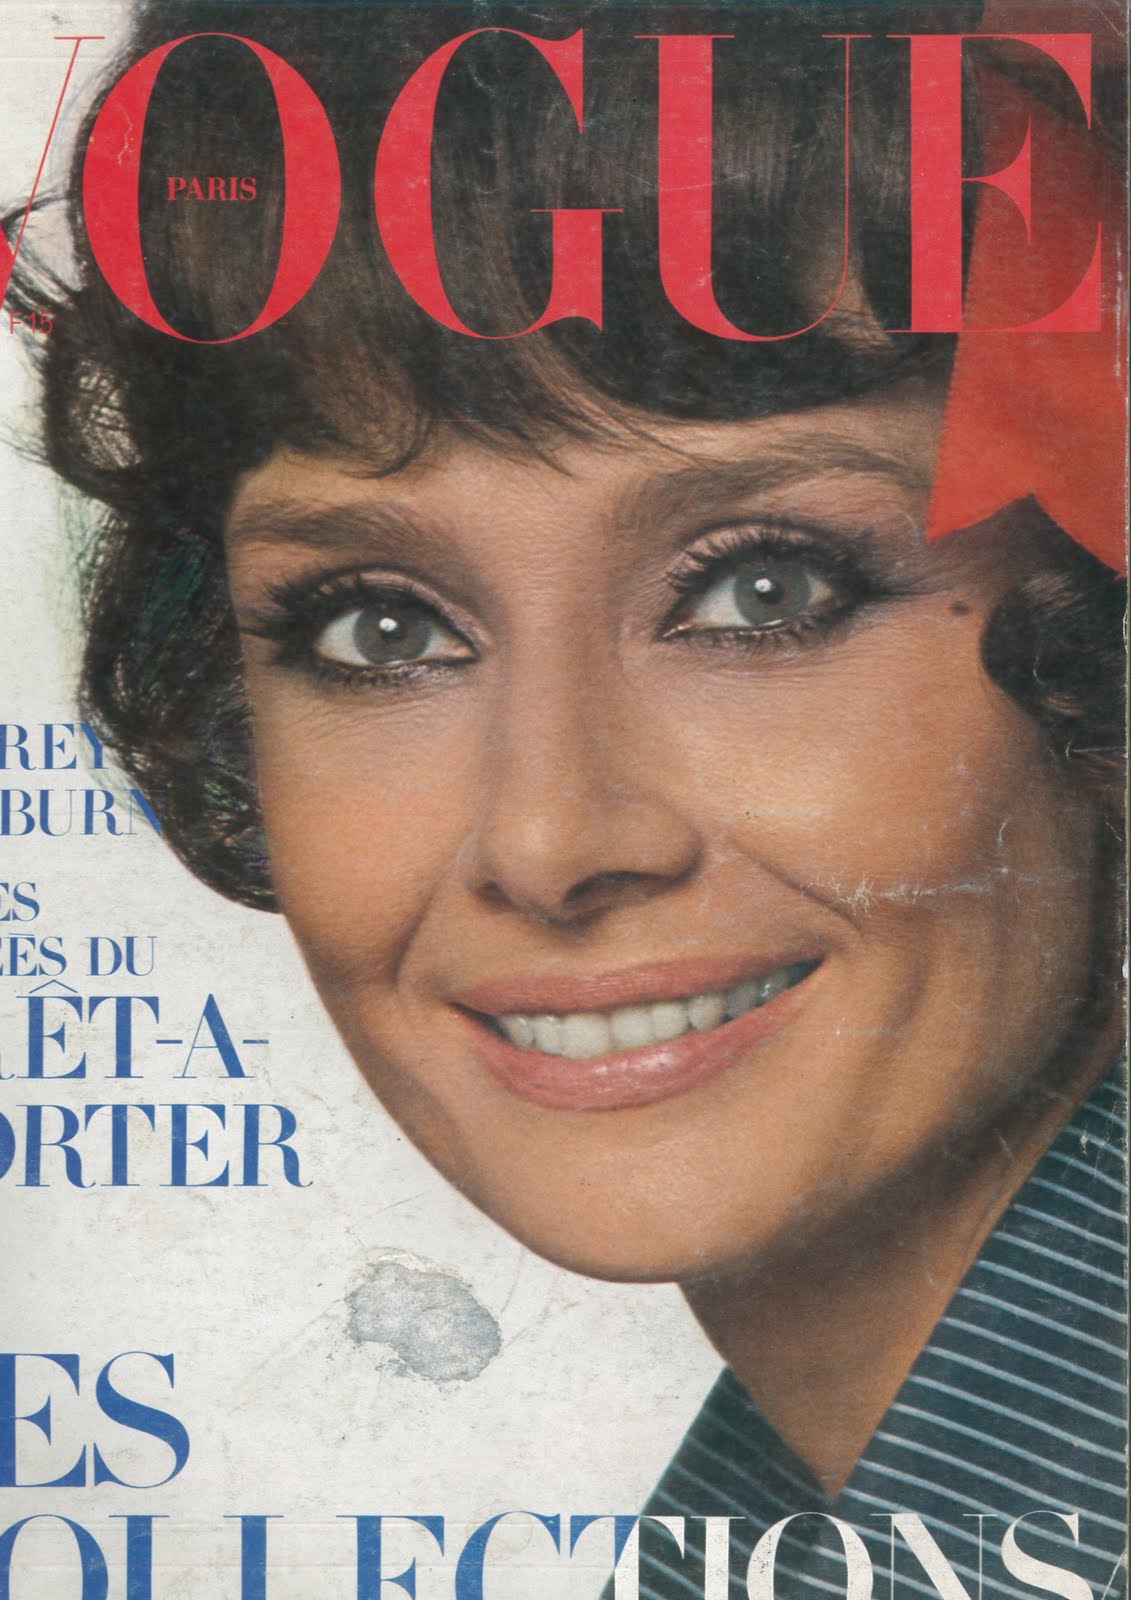 Cover Model Audrey Hepburn